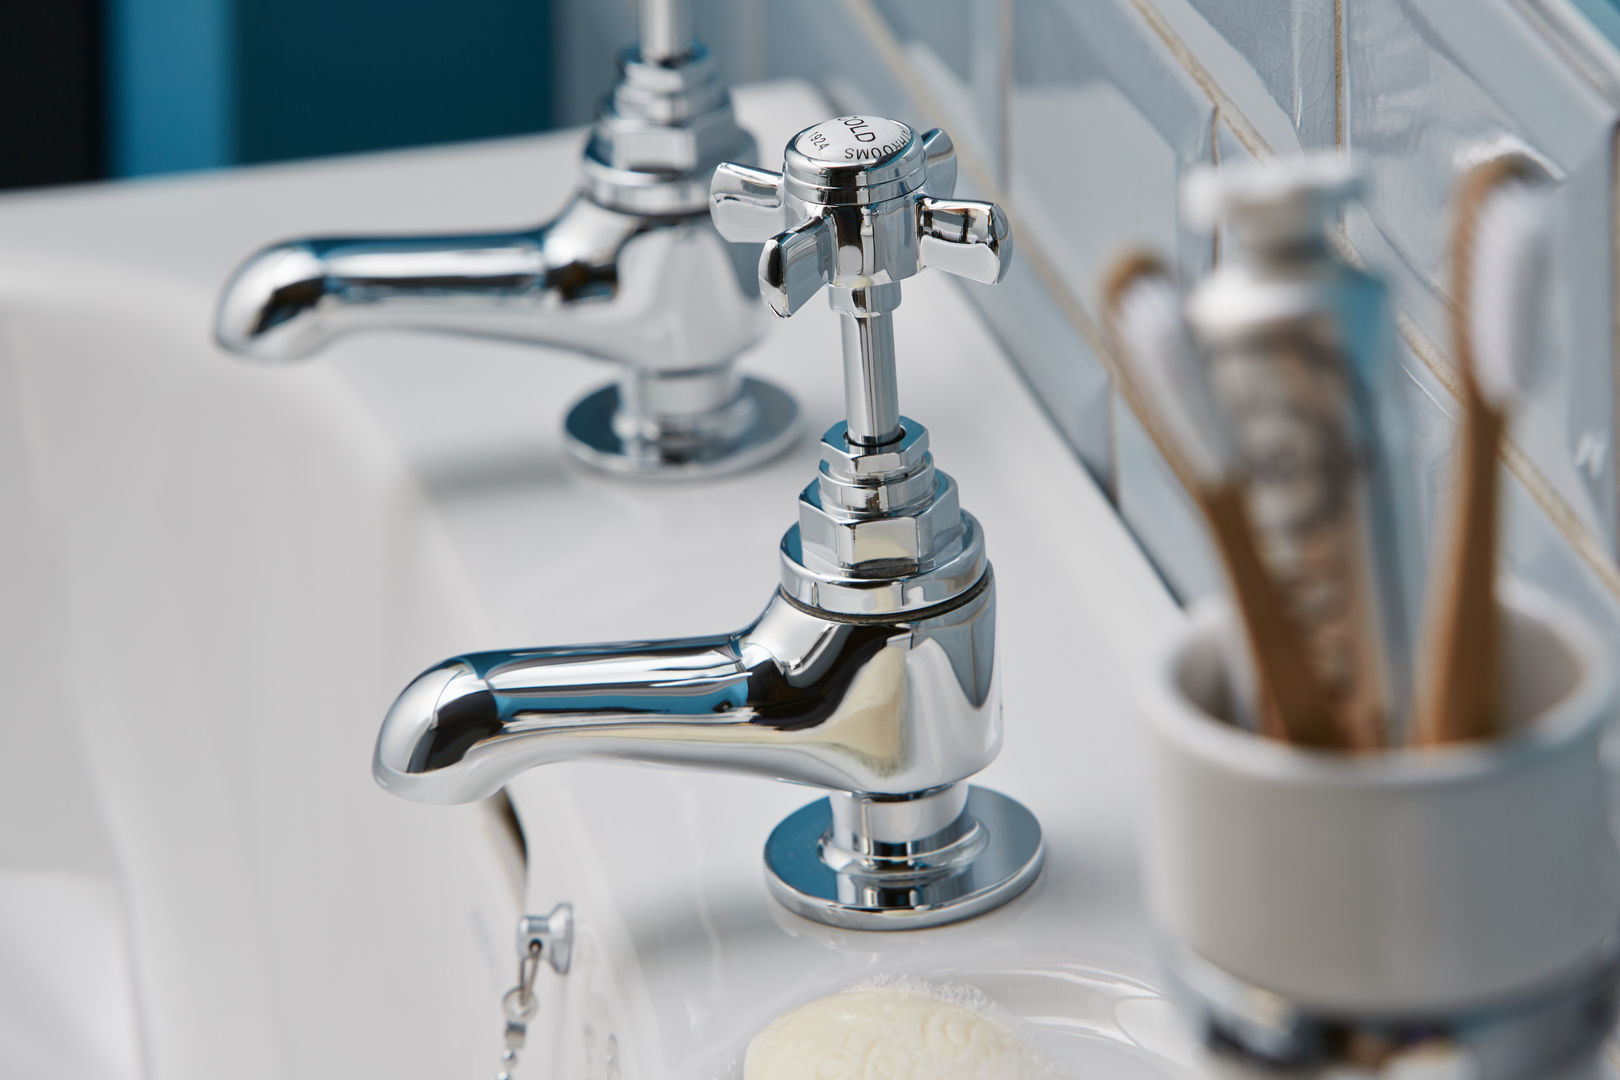 Dawlish basin taps homify Phòng tắm phong cách kinh điển Dawlish